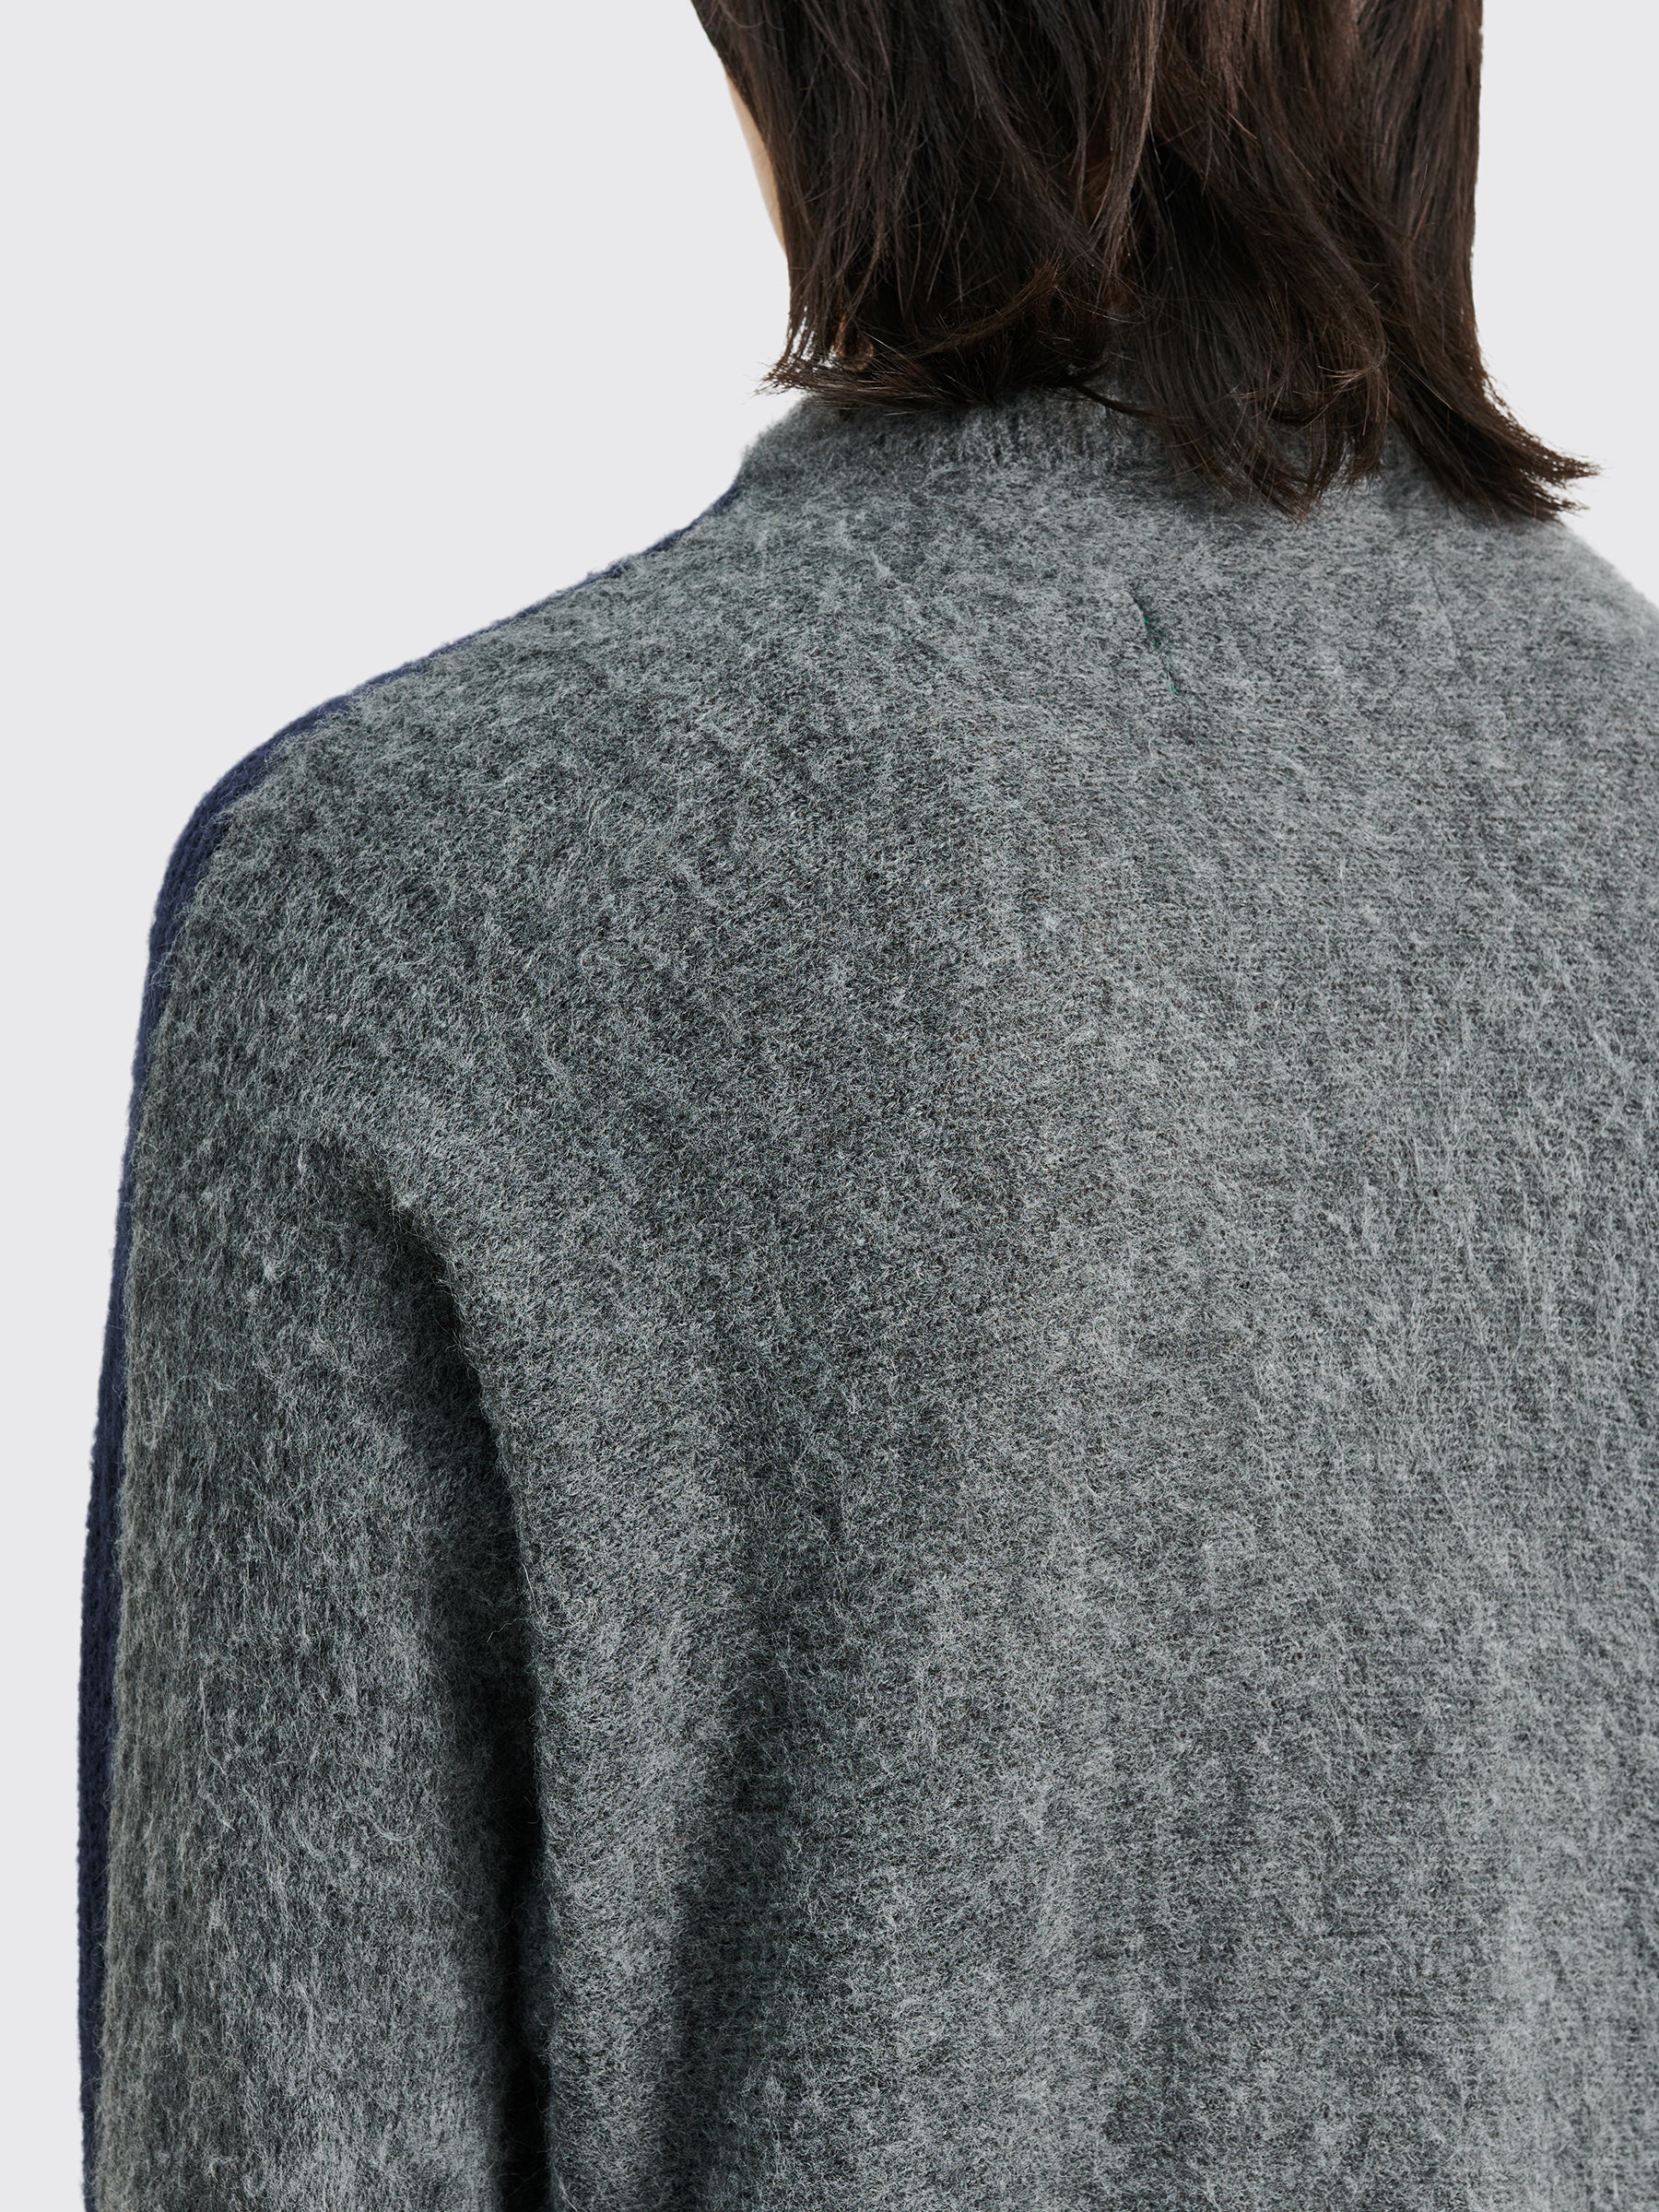 TRÈS BIEN everywear Split Knitted Sweater Wool Blend Navy / Grey